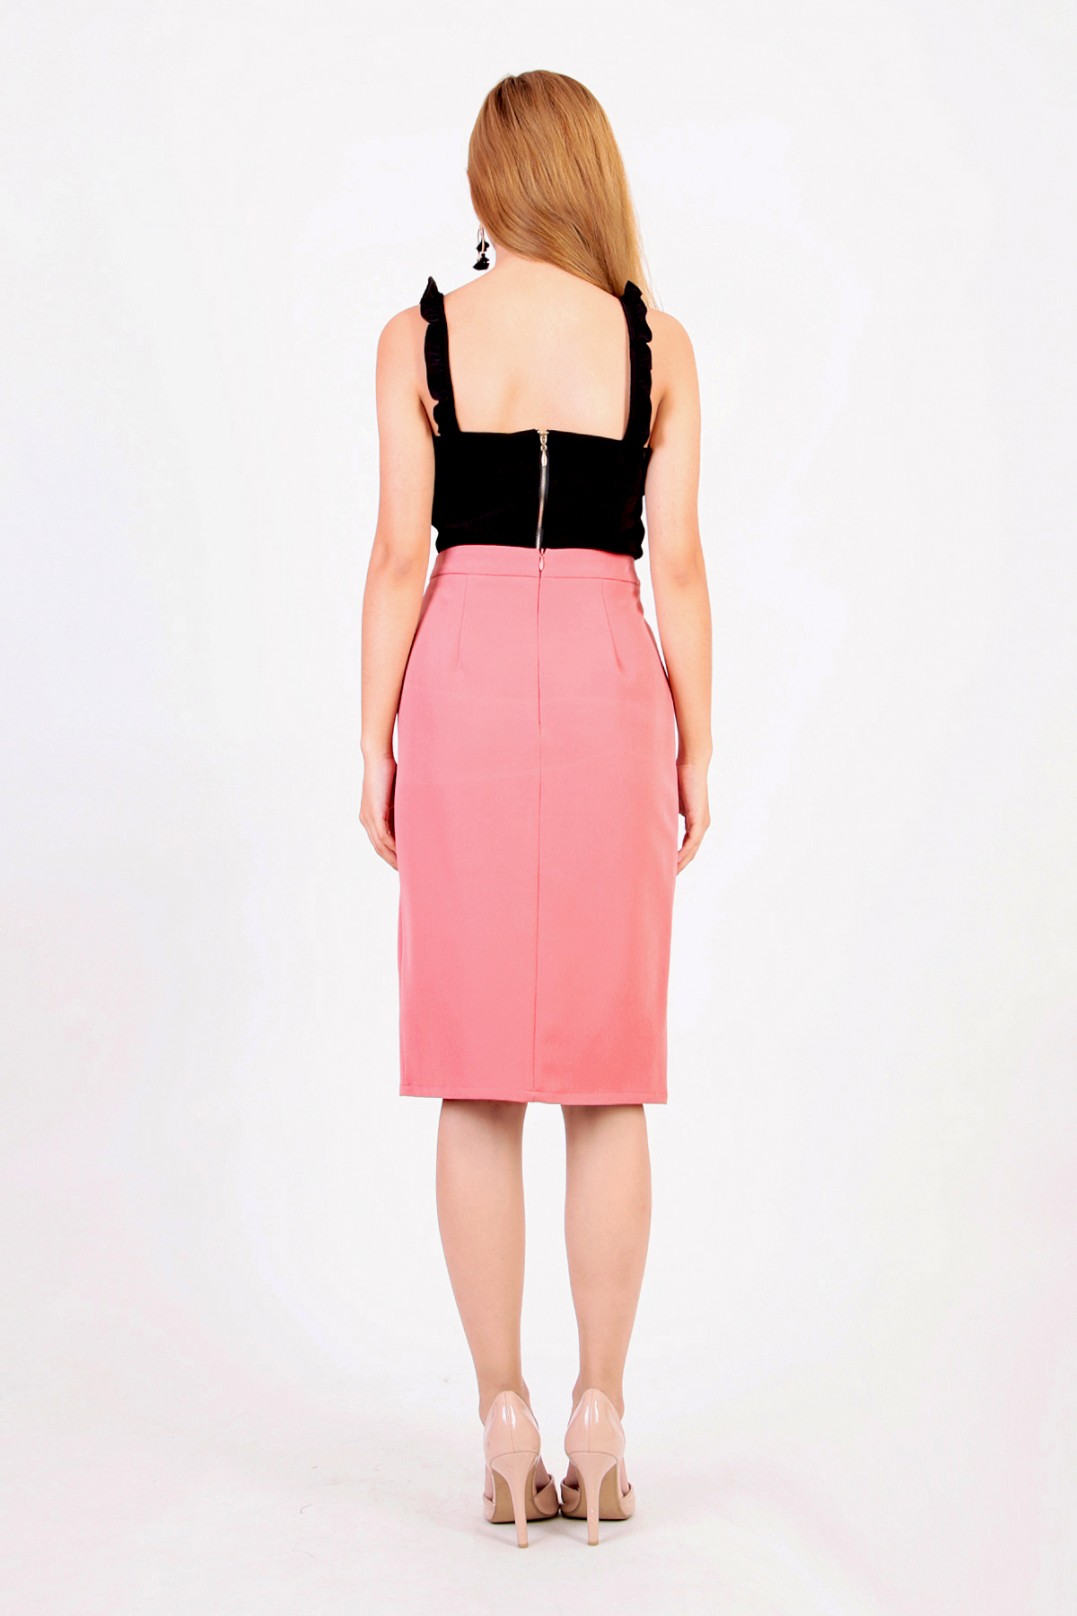 Verron Button Down Skirt in Pink - MGP